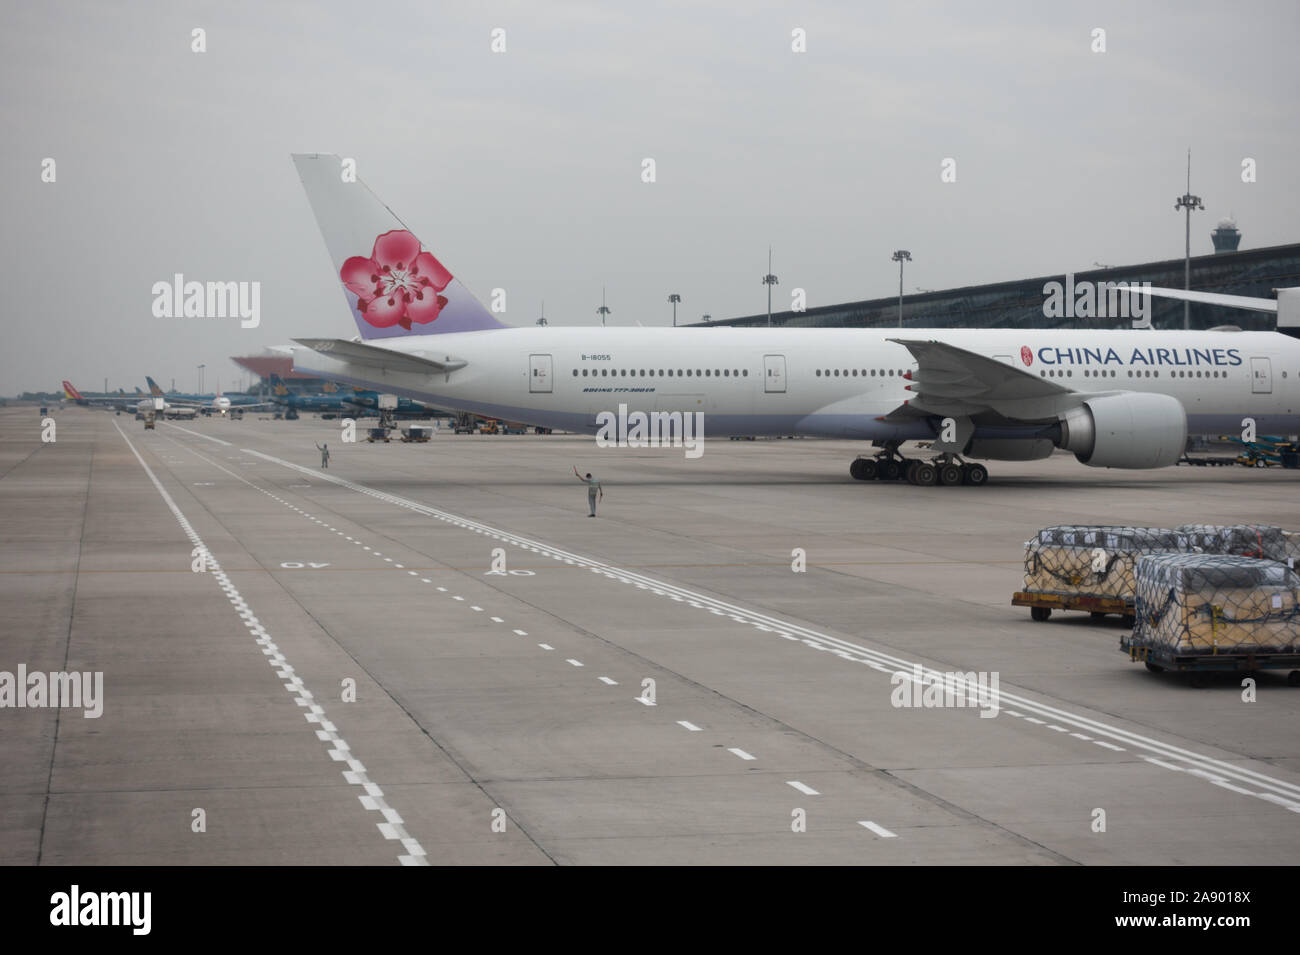 Un avion de China Airlines s'apprête à rouler sur le tarmac d'un aéroport Banque D'Images